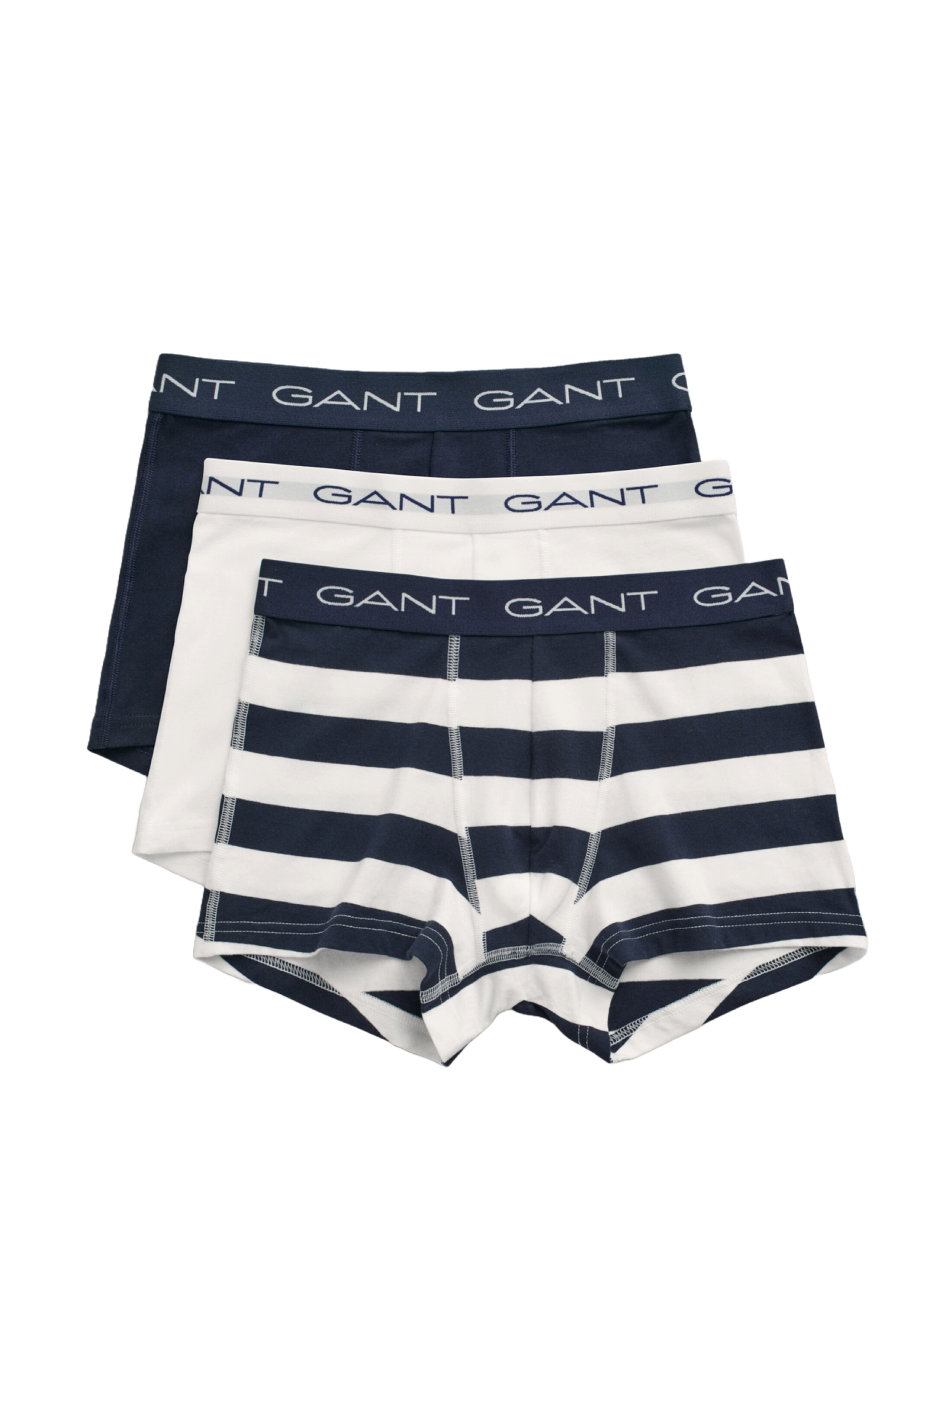 Gant Stripe Trunk 3 Pack Gift Box